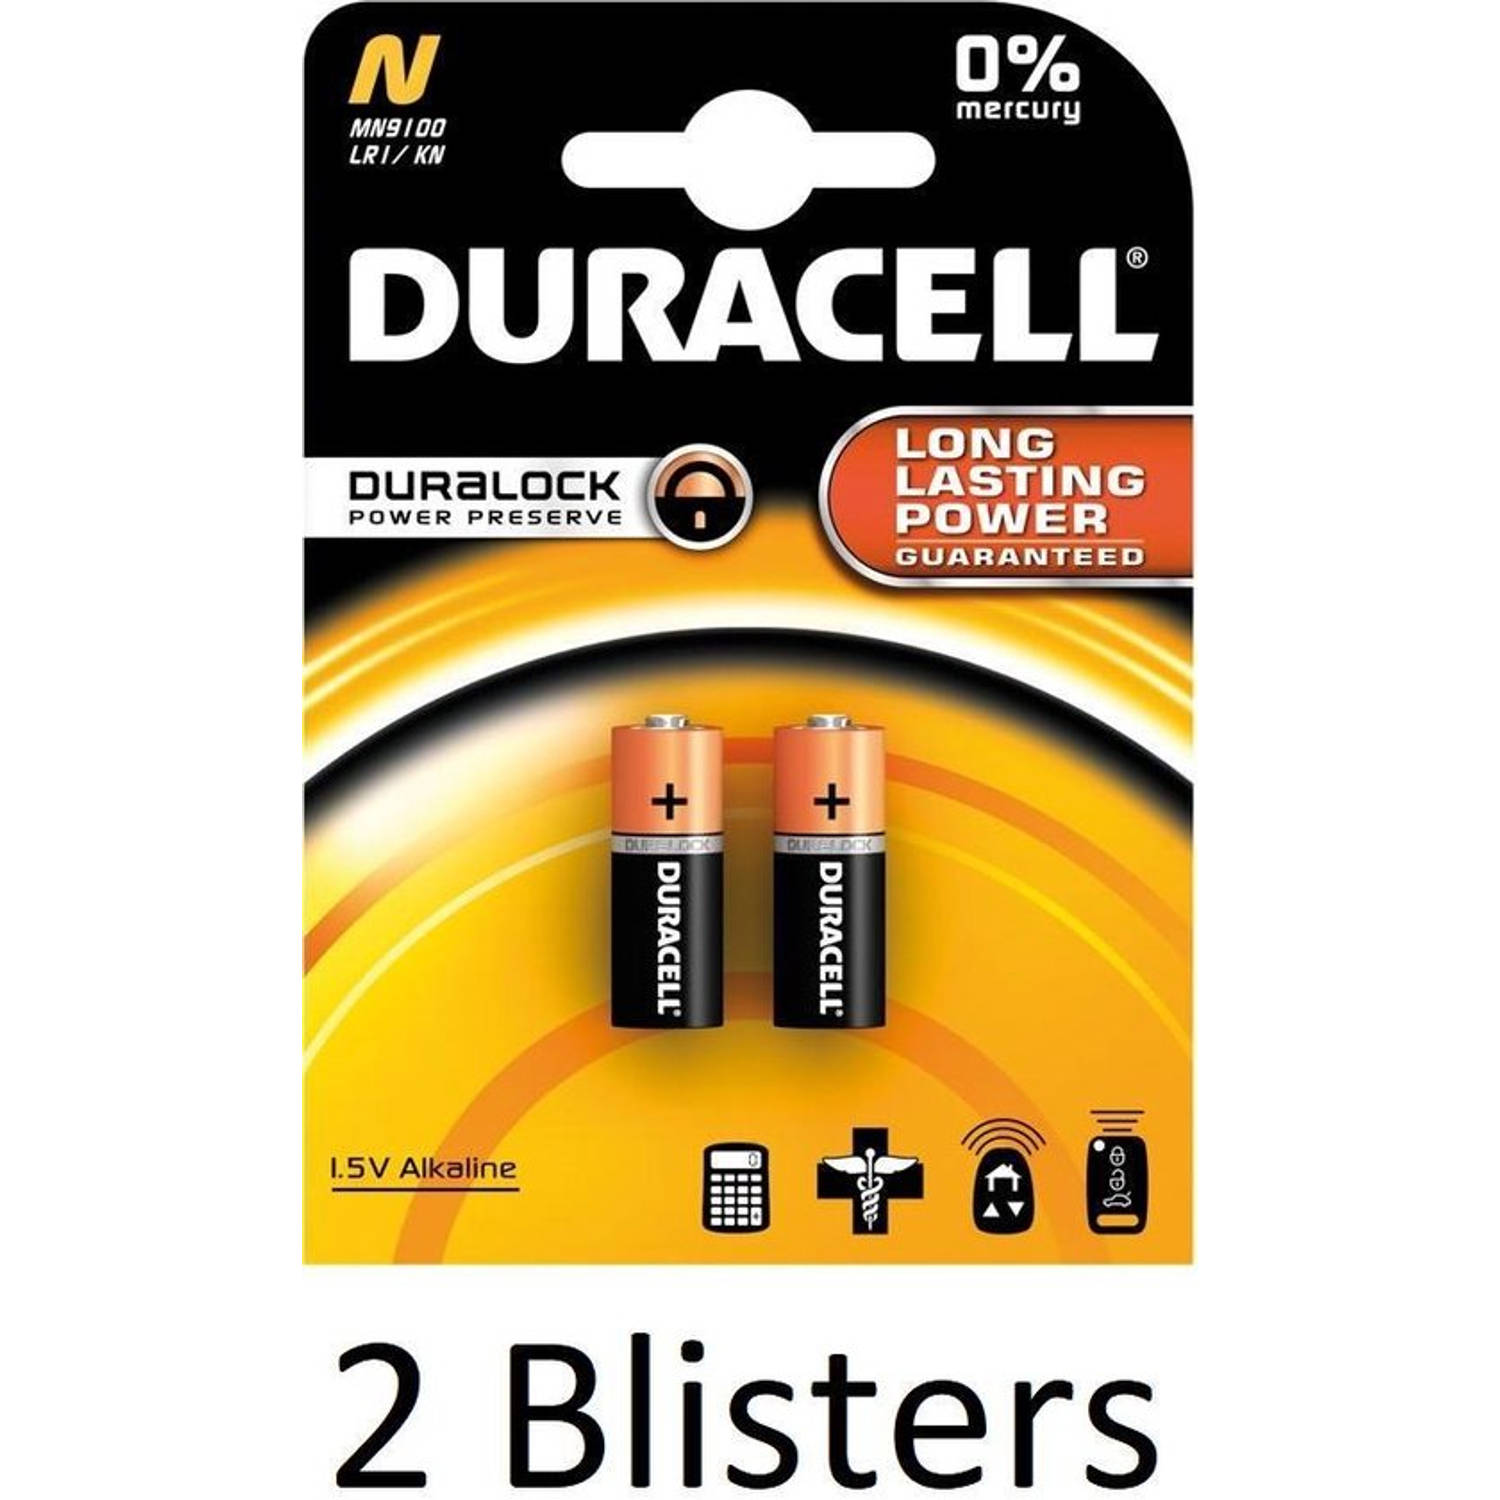 4 Stuks (2 Blisters a 2 st) Duracell Batterij N/Mn9100 1.5V